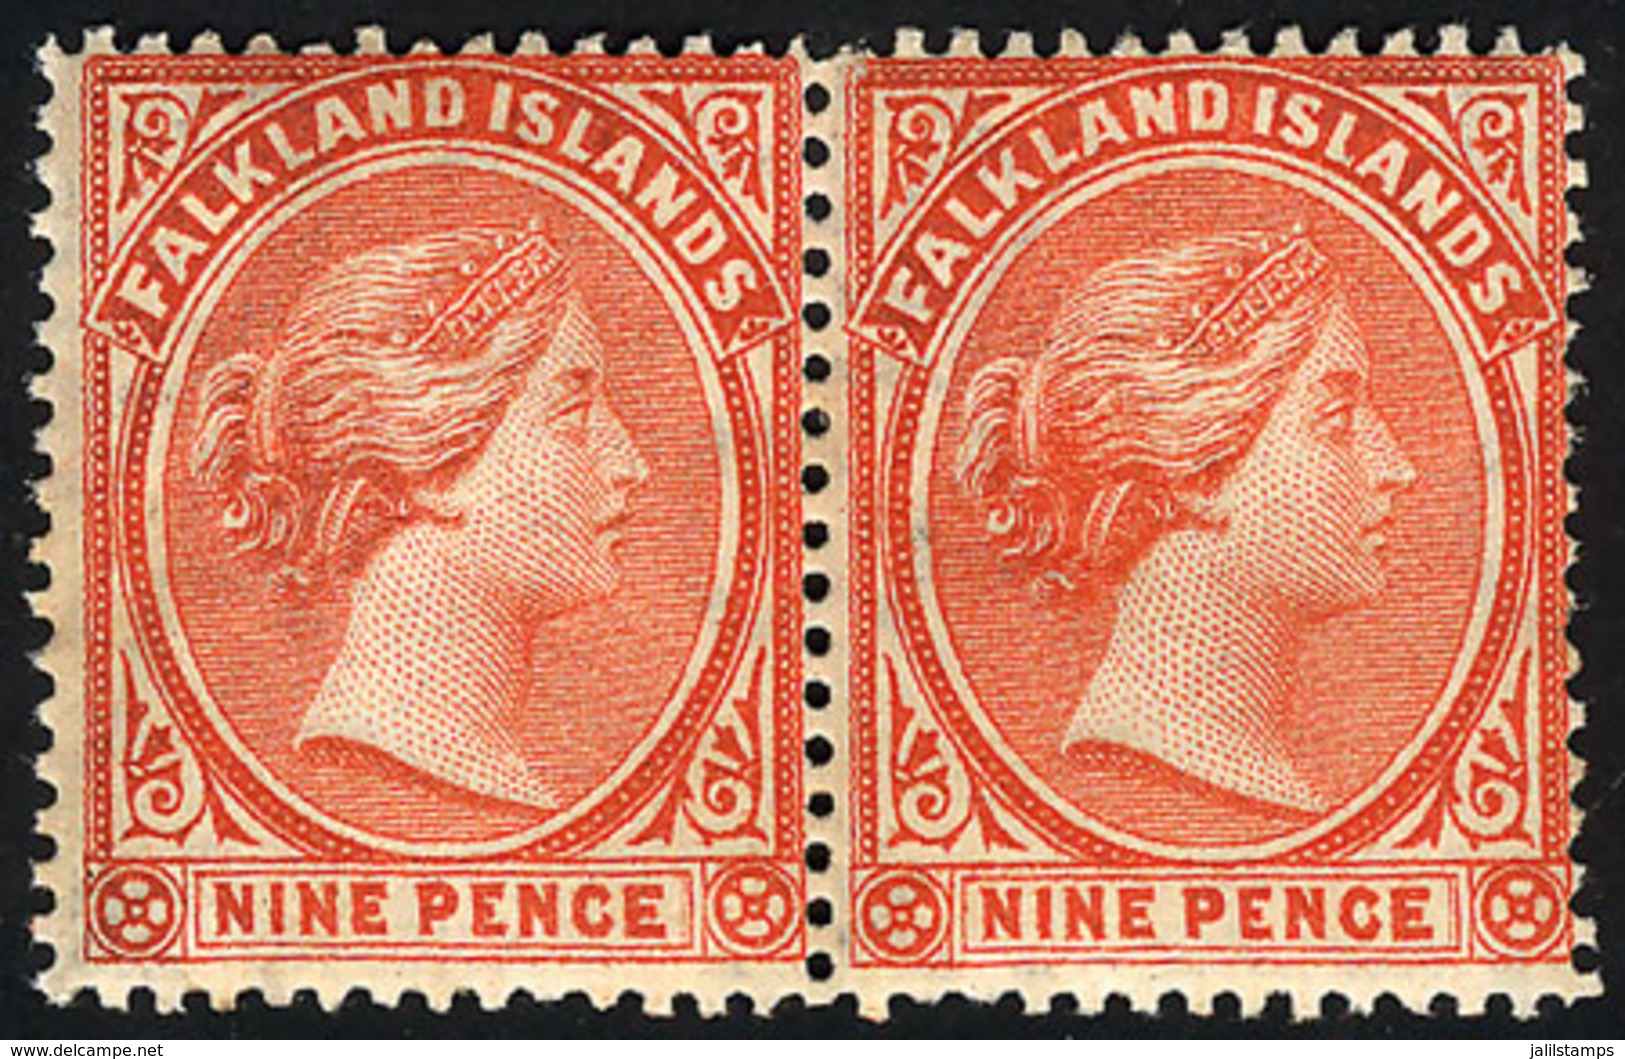 1027 FALKLAND ISLANDS/MALVINAS: Sc.17, Pair Mint Original Gum, The Right Stamp Is MNH, VF - Falkland